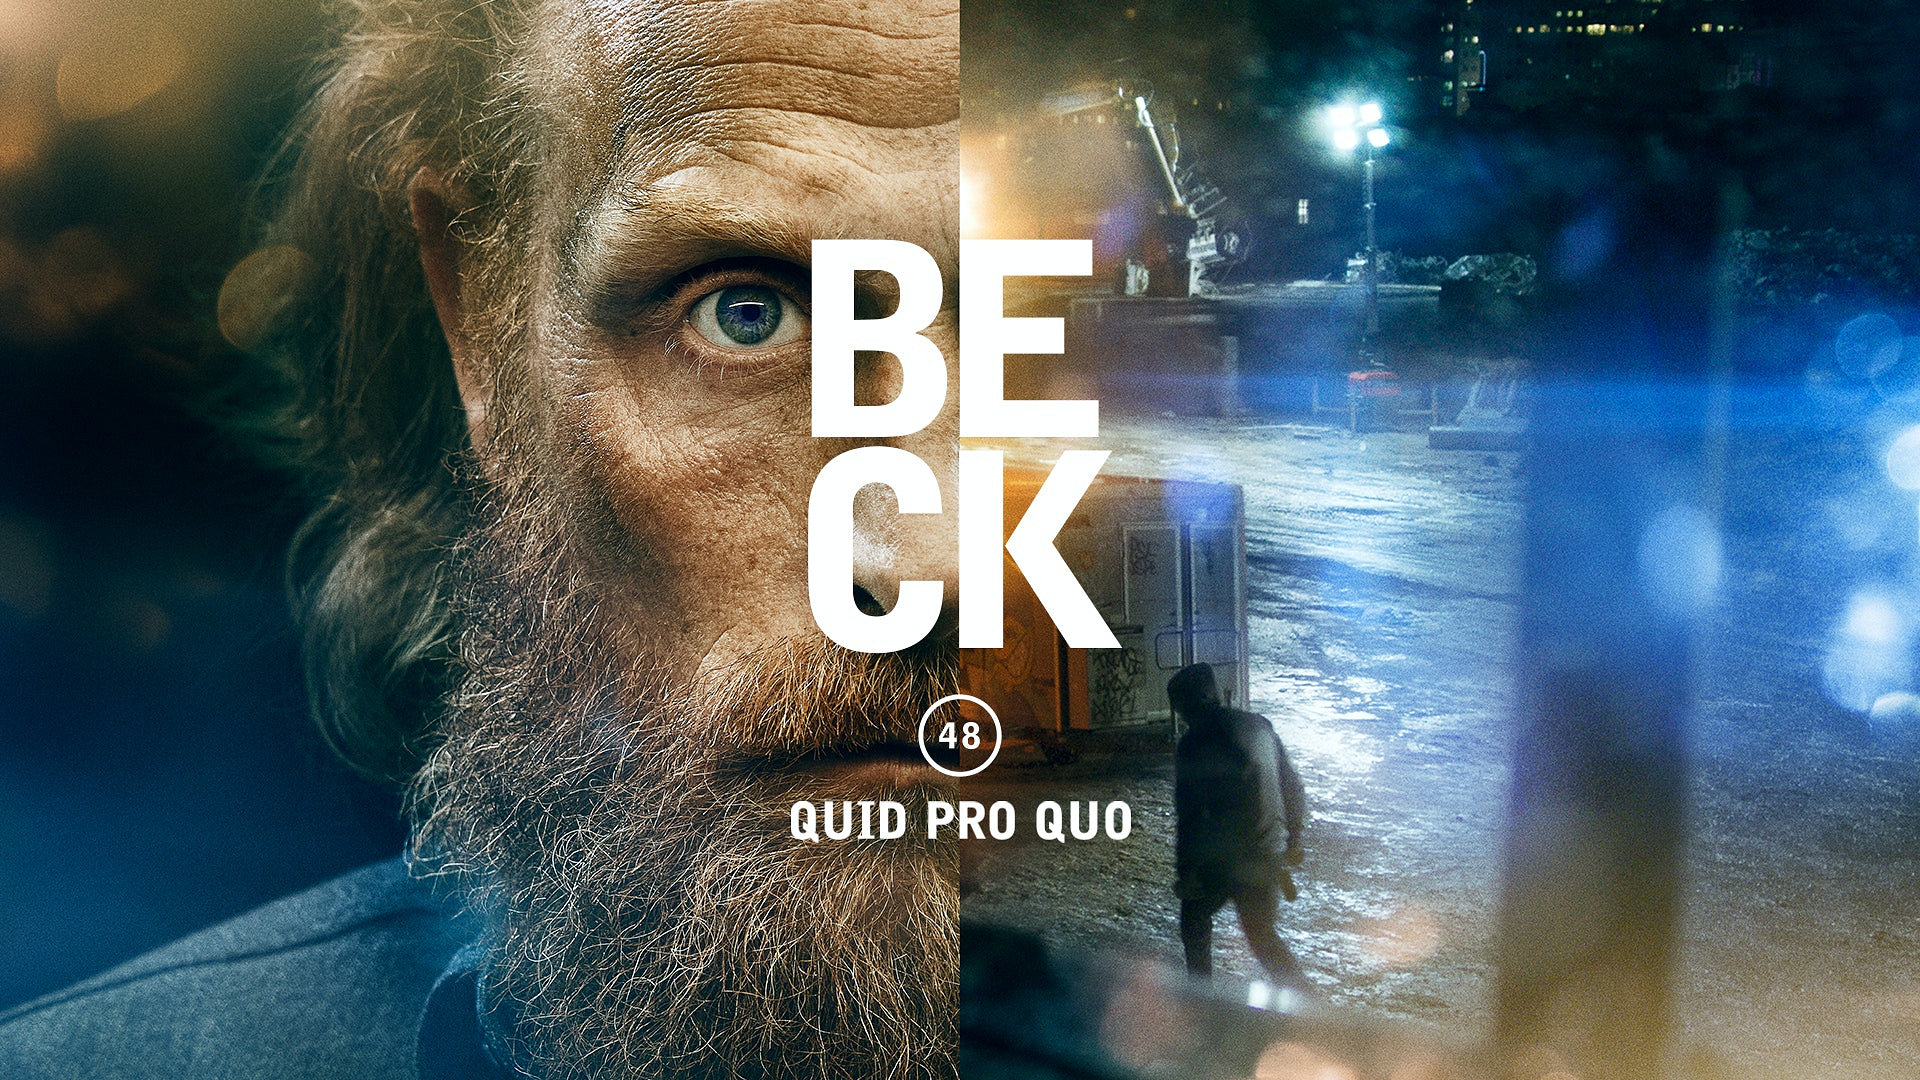 Beck - Quid pro quo